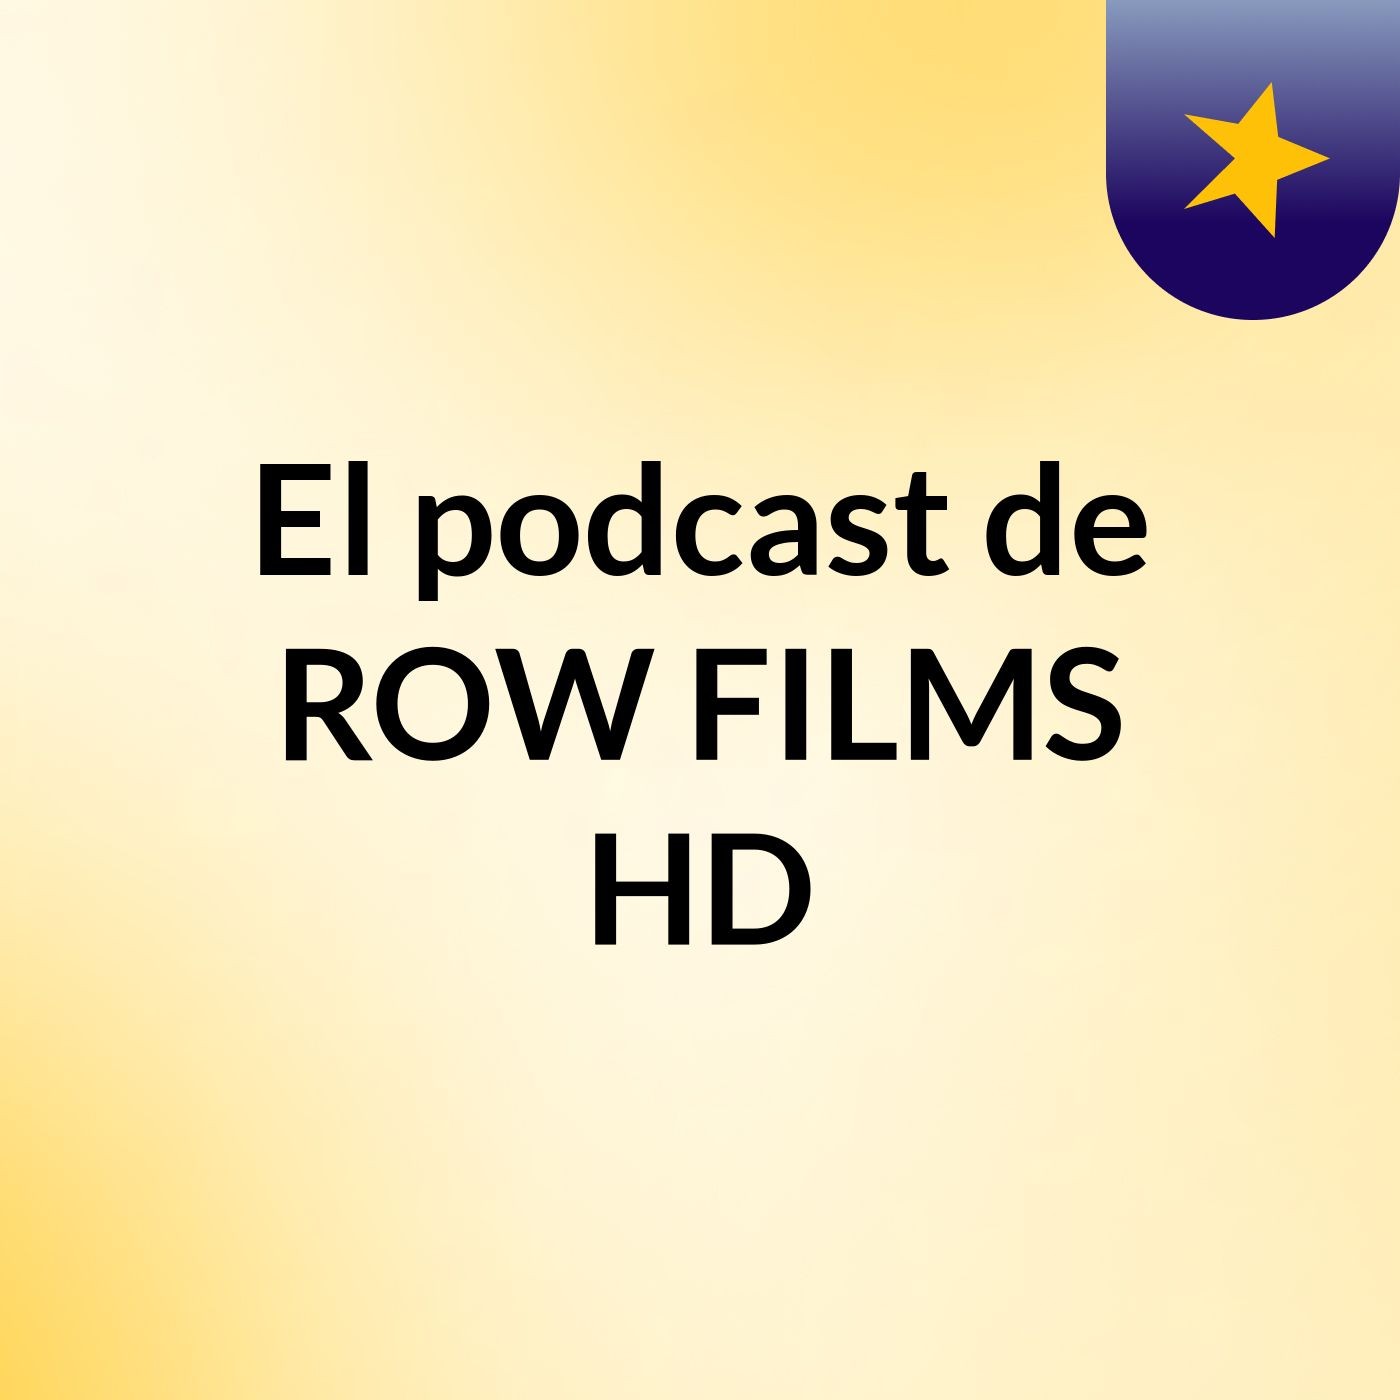 El podcast de ROW FILMS HD